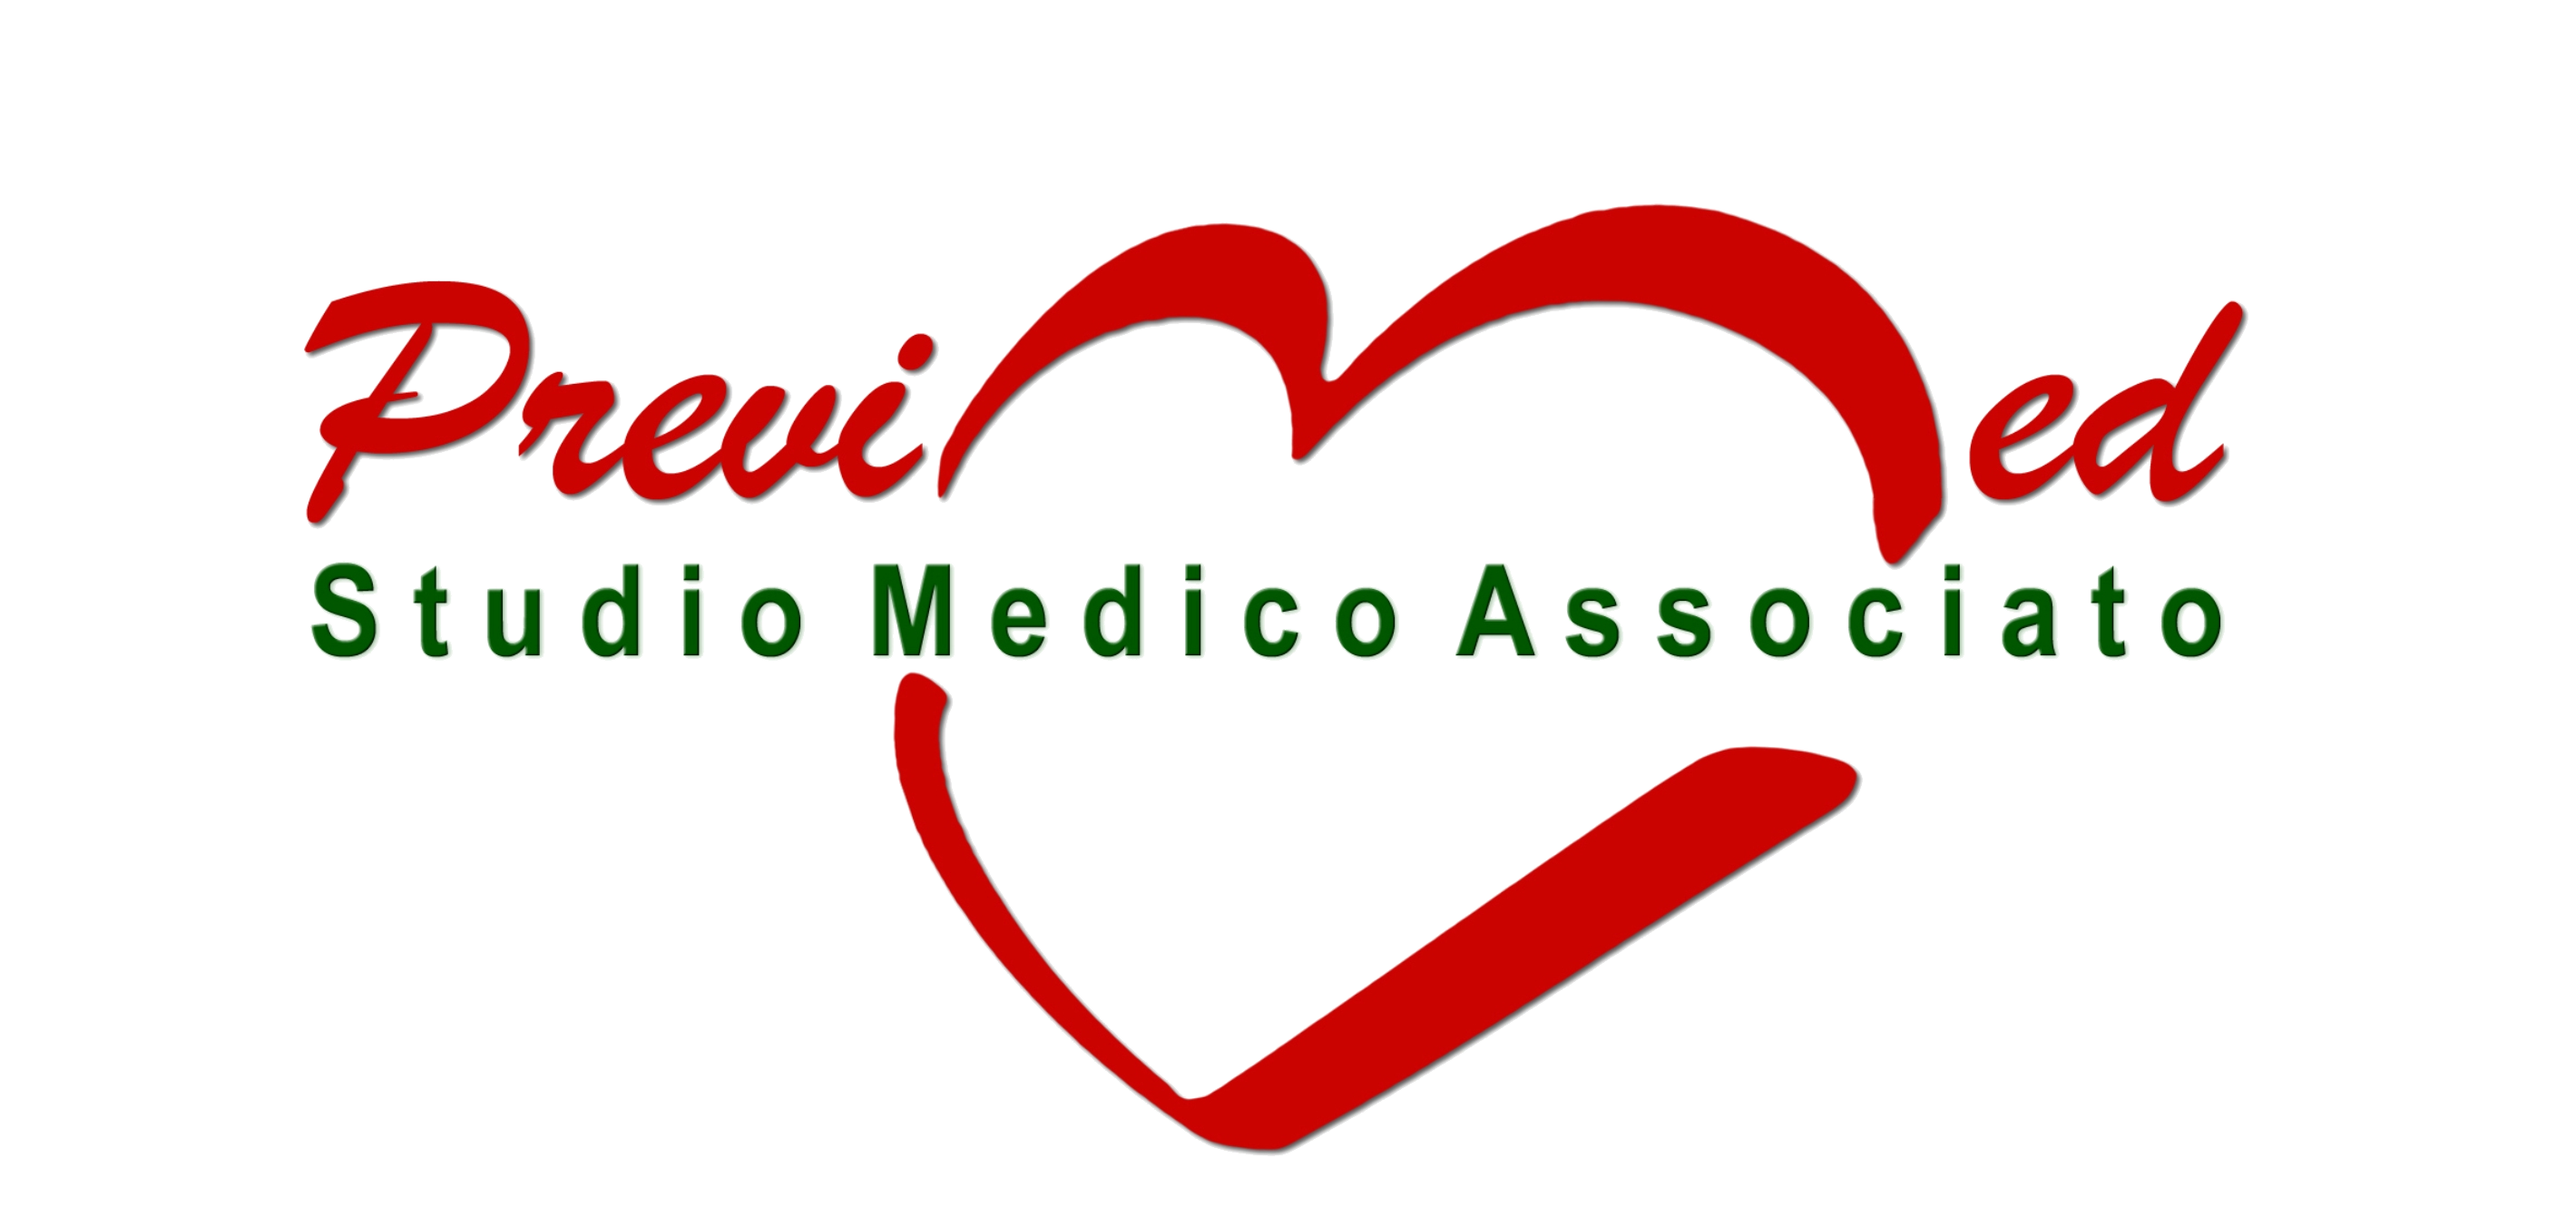 Previmed Studio Medico Associato